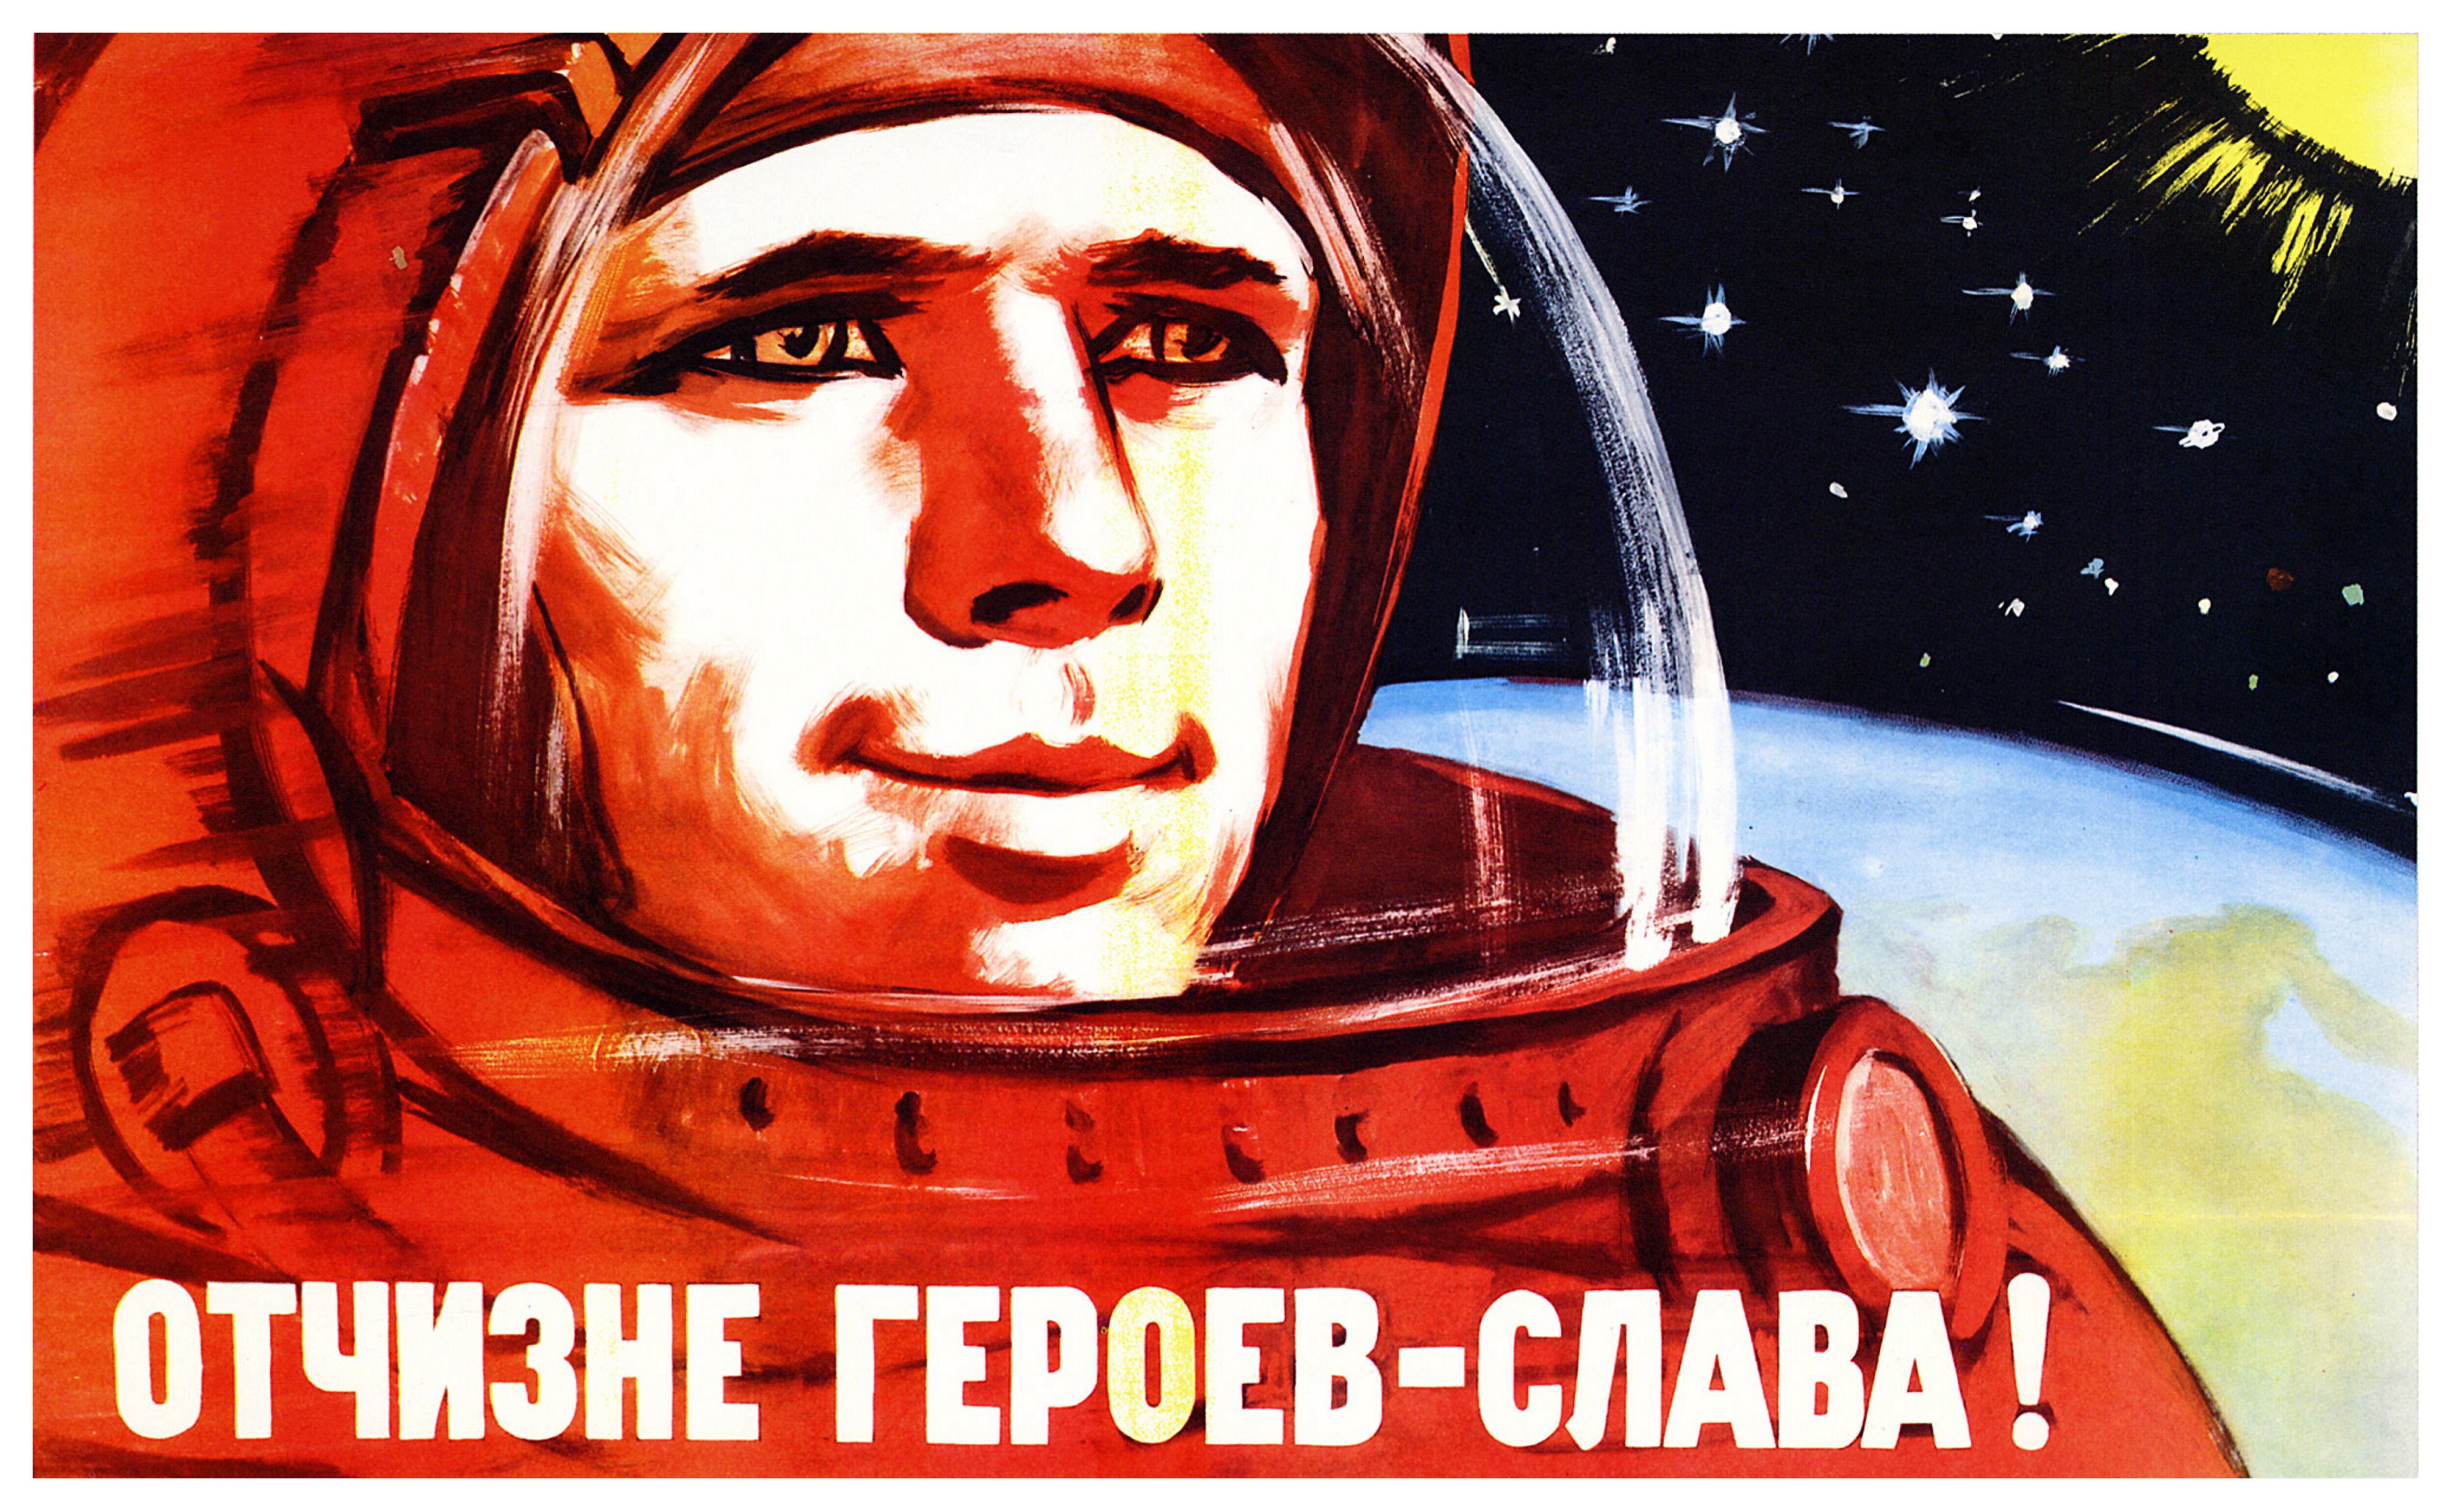 Cartel de propaganda del programa espacial soviético, 1965.